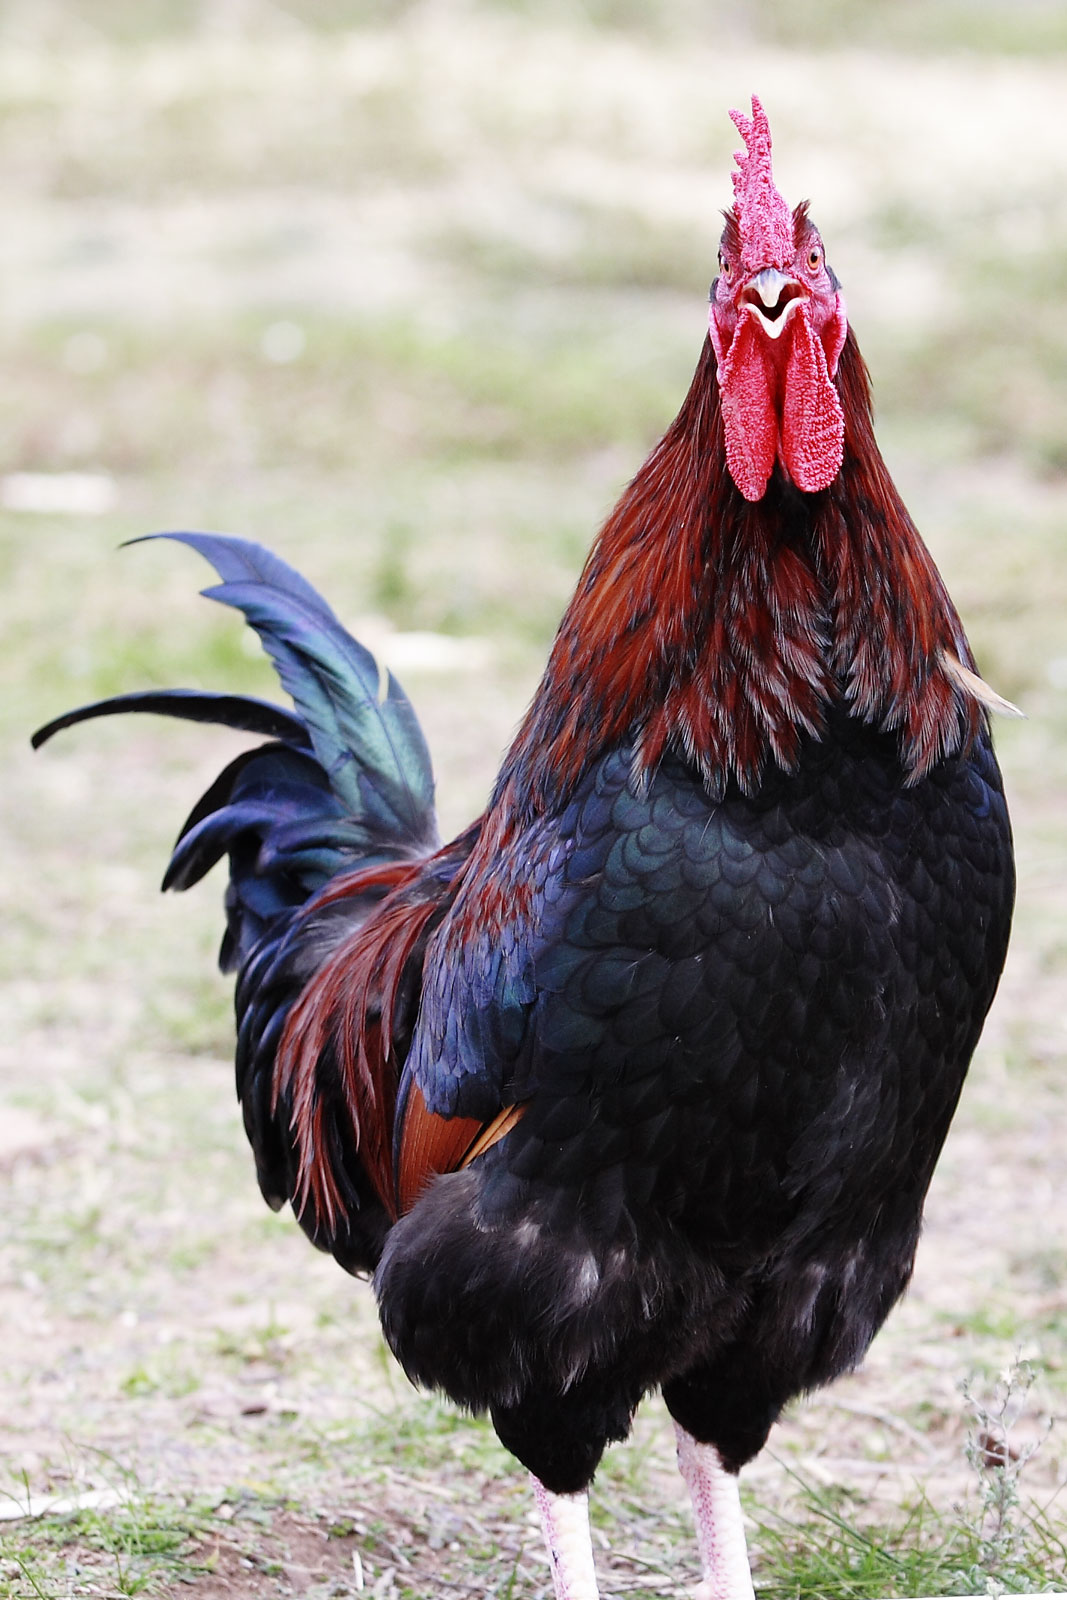 File:Rooster open beak - Wikimedia Commons